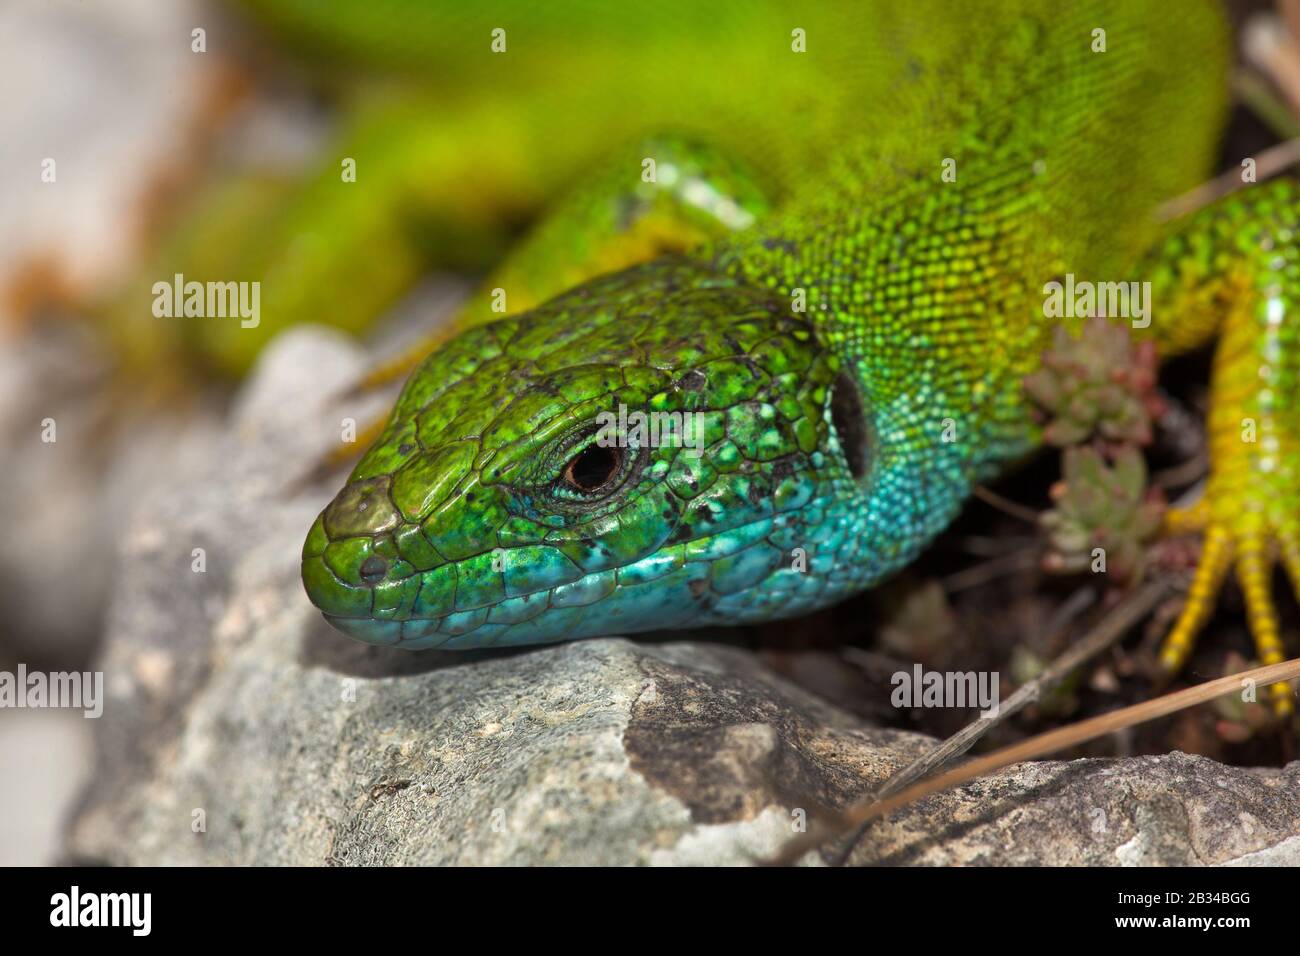 Eastern Green Lizard, European green lizard, Emerald lizard (Lacerta viridis, Lacerta viridis viridis), portrait, side glance Stock Photo